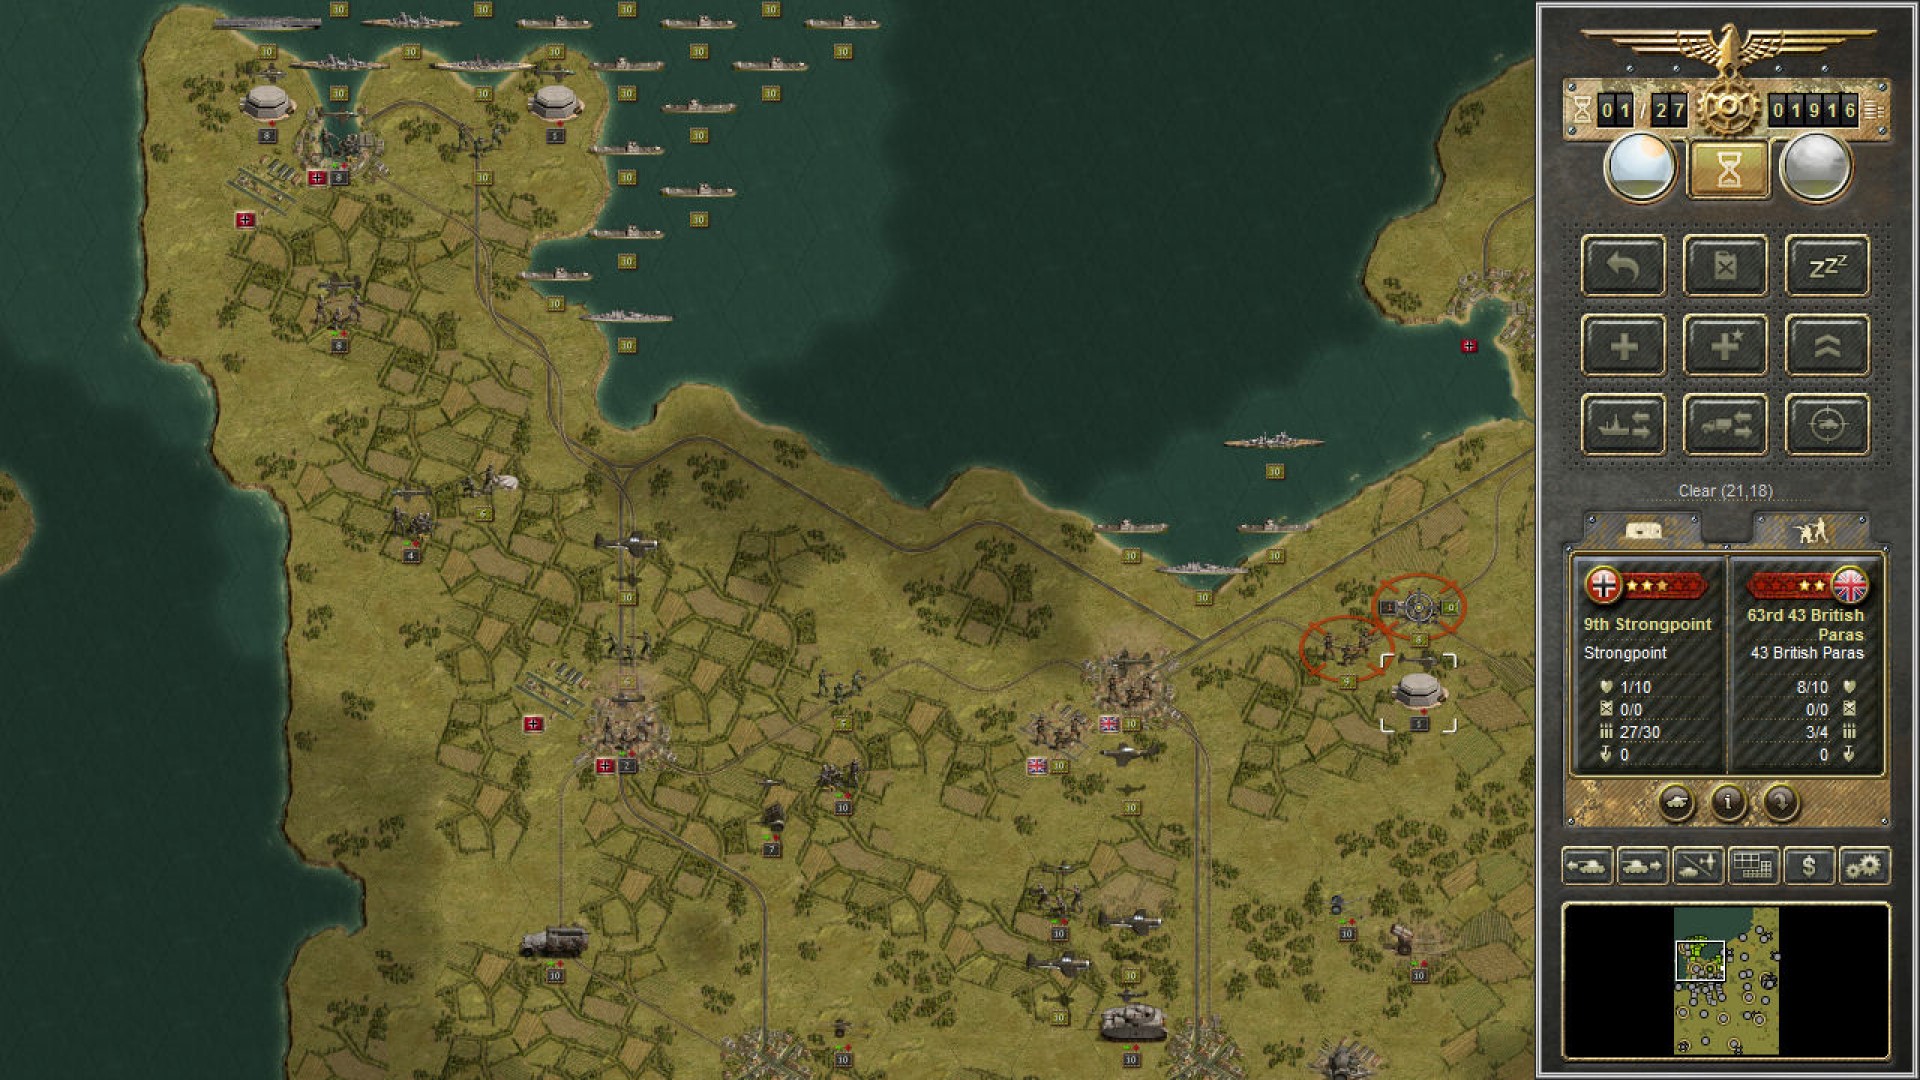 بهترین بازی های جنگی موبایل: سپاه Panzer. تصویر نقشه ای را با واحدهای مختلف نظامی که در سراسر ITT پخش شده است نشان می دهد